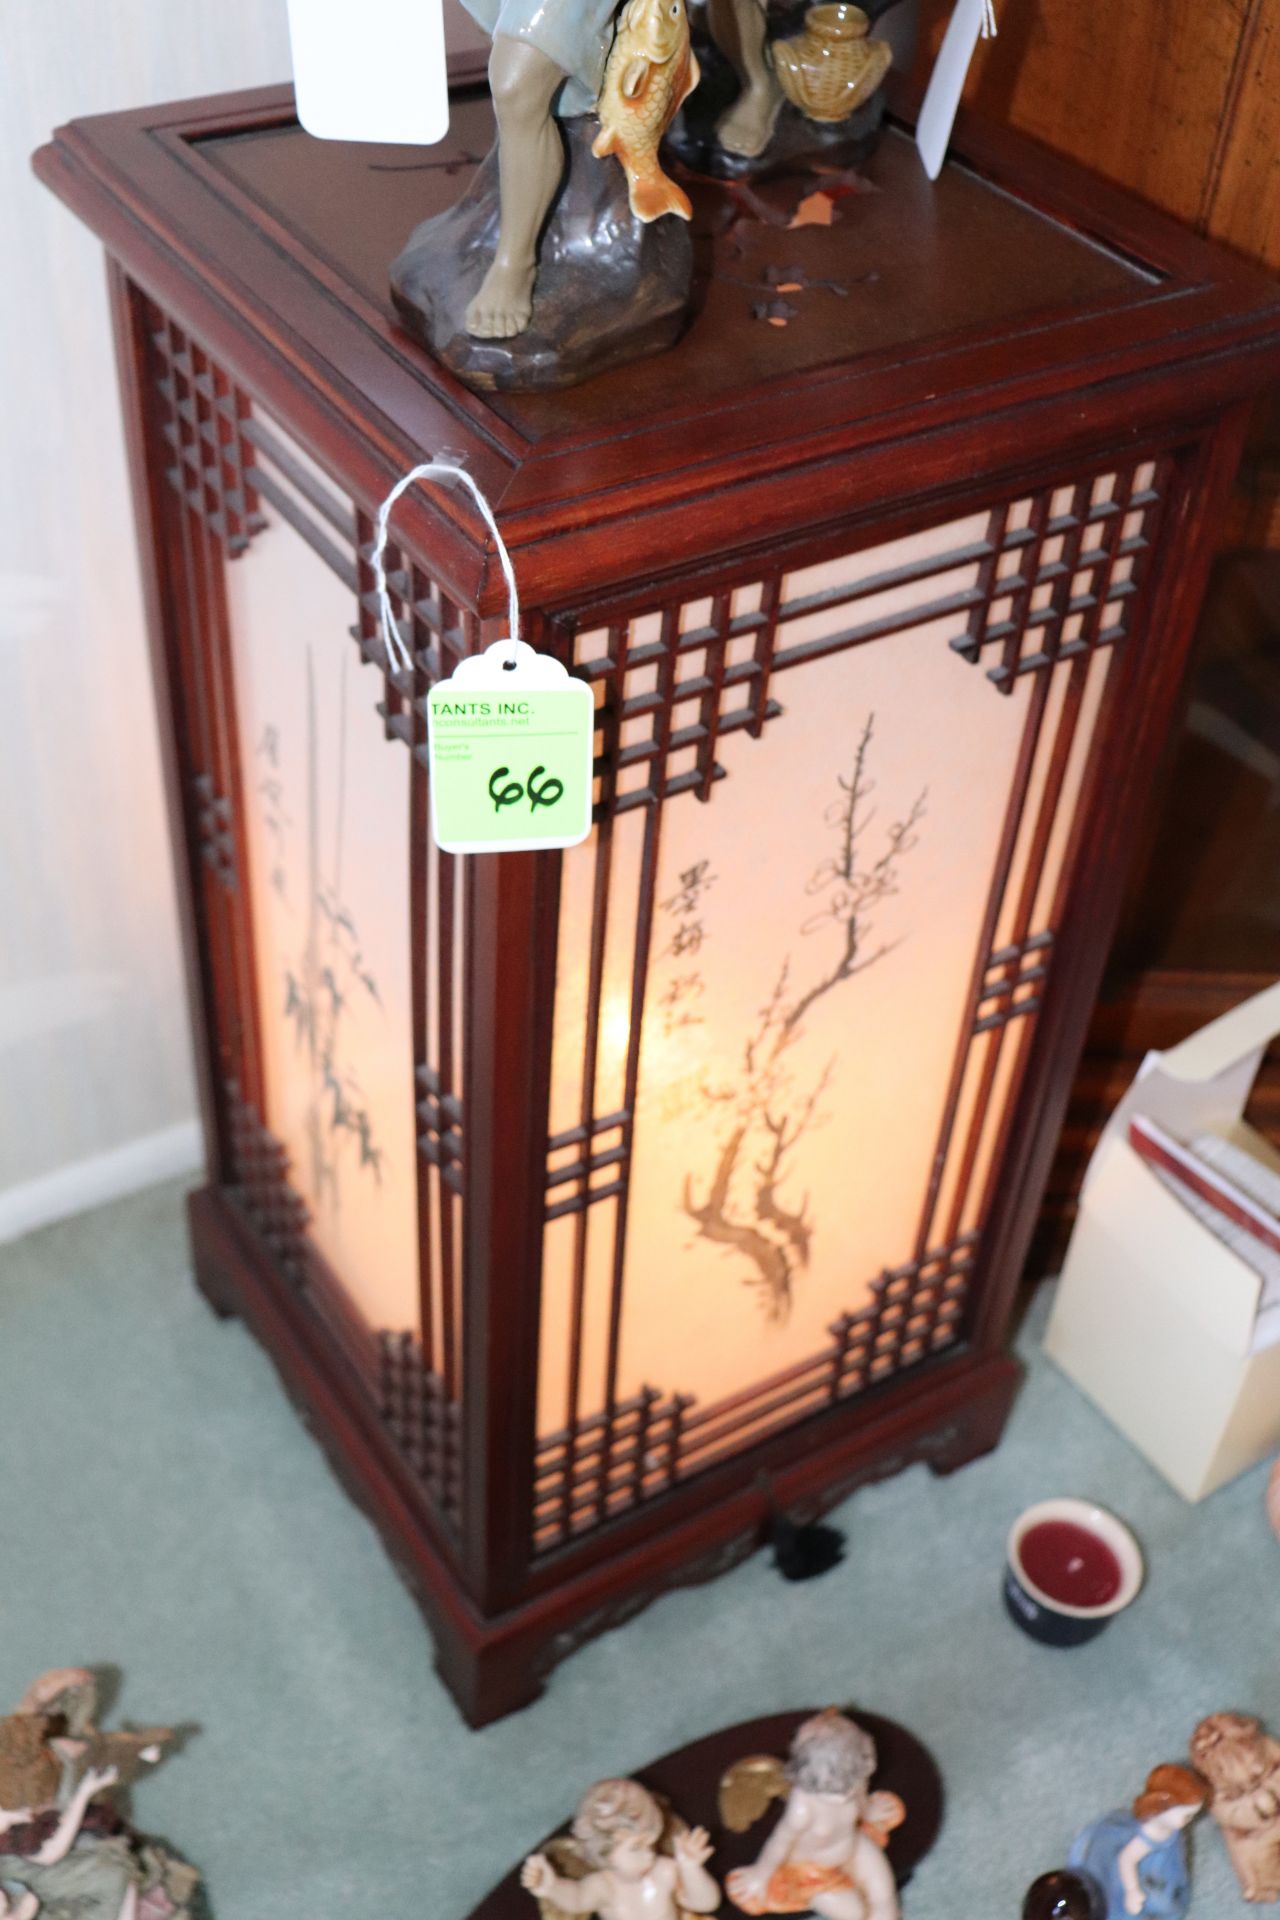 Oriental paper lamp display, 12" x 12" x 23"